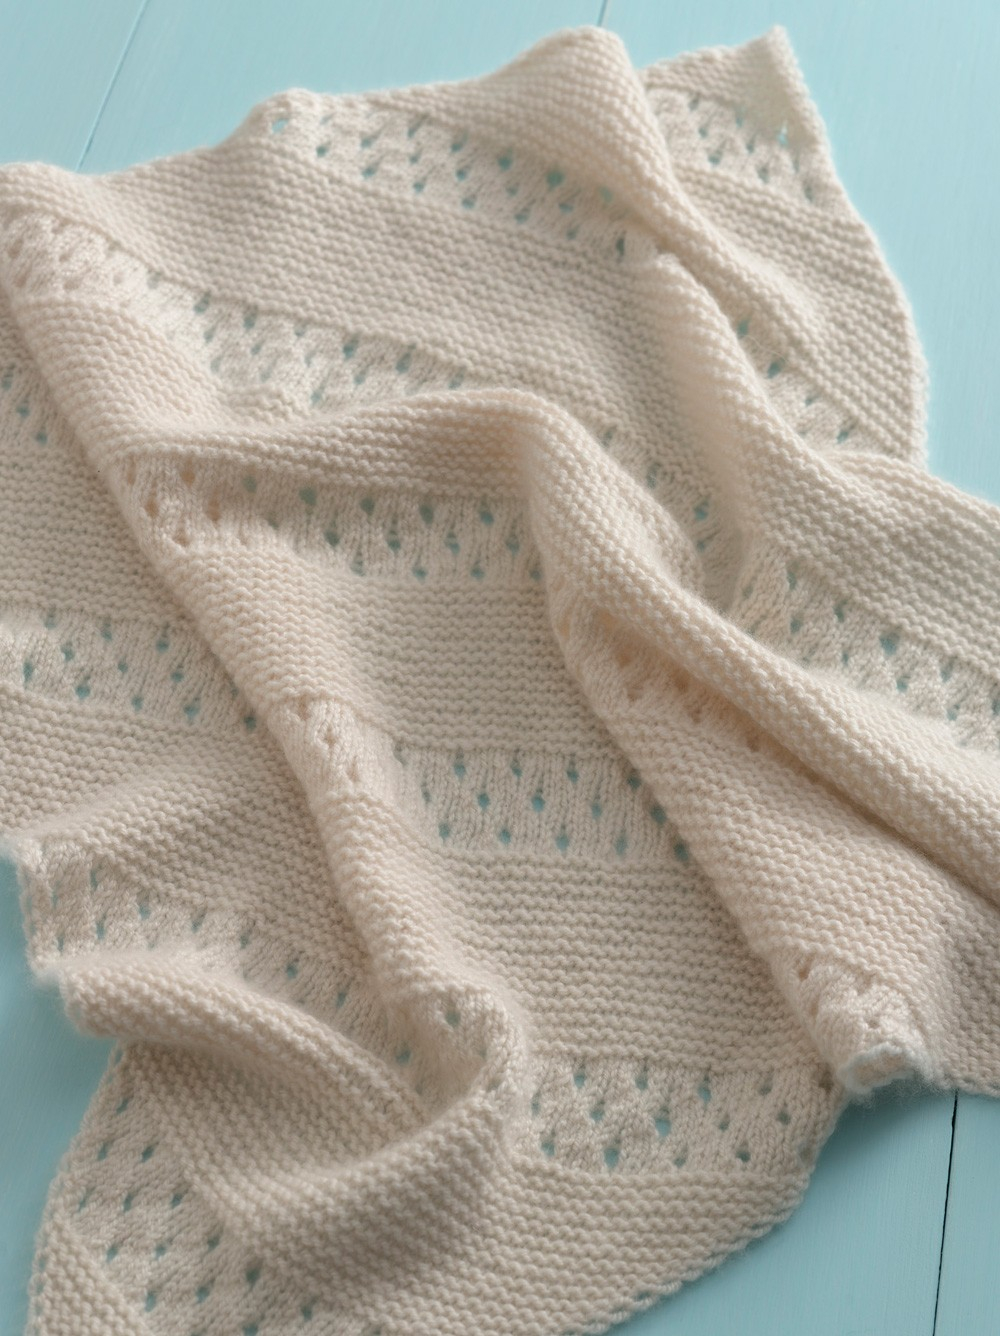 Knitted Baby Blanket Pattern Free Treasured Heirloom Ba Blanket Free Knit Pattern Styles Idea